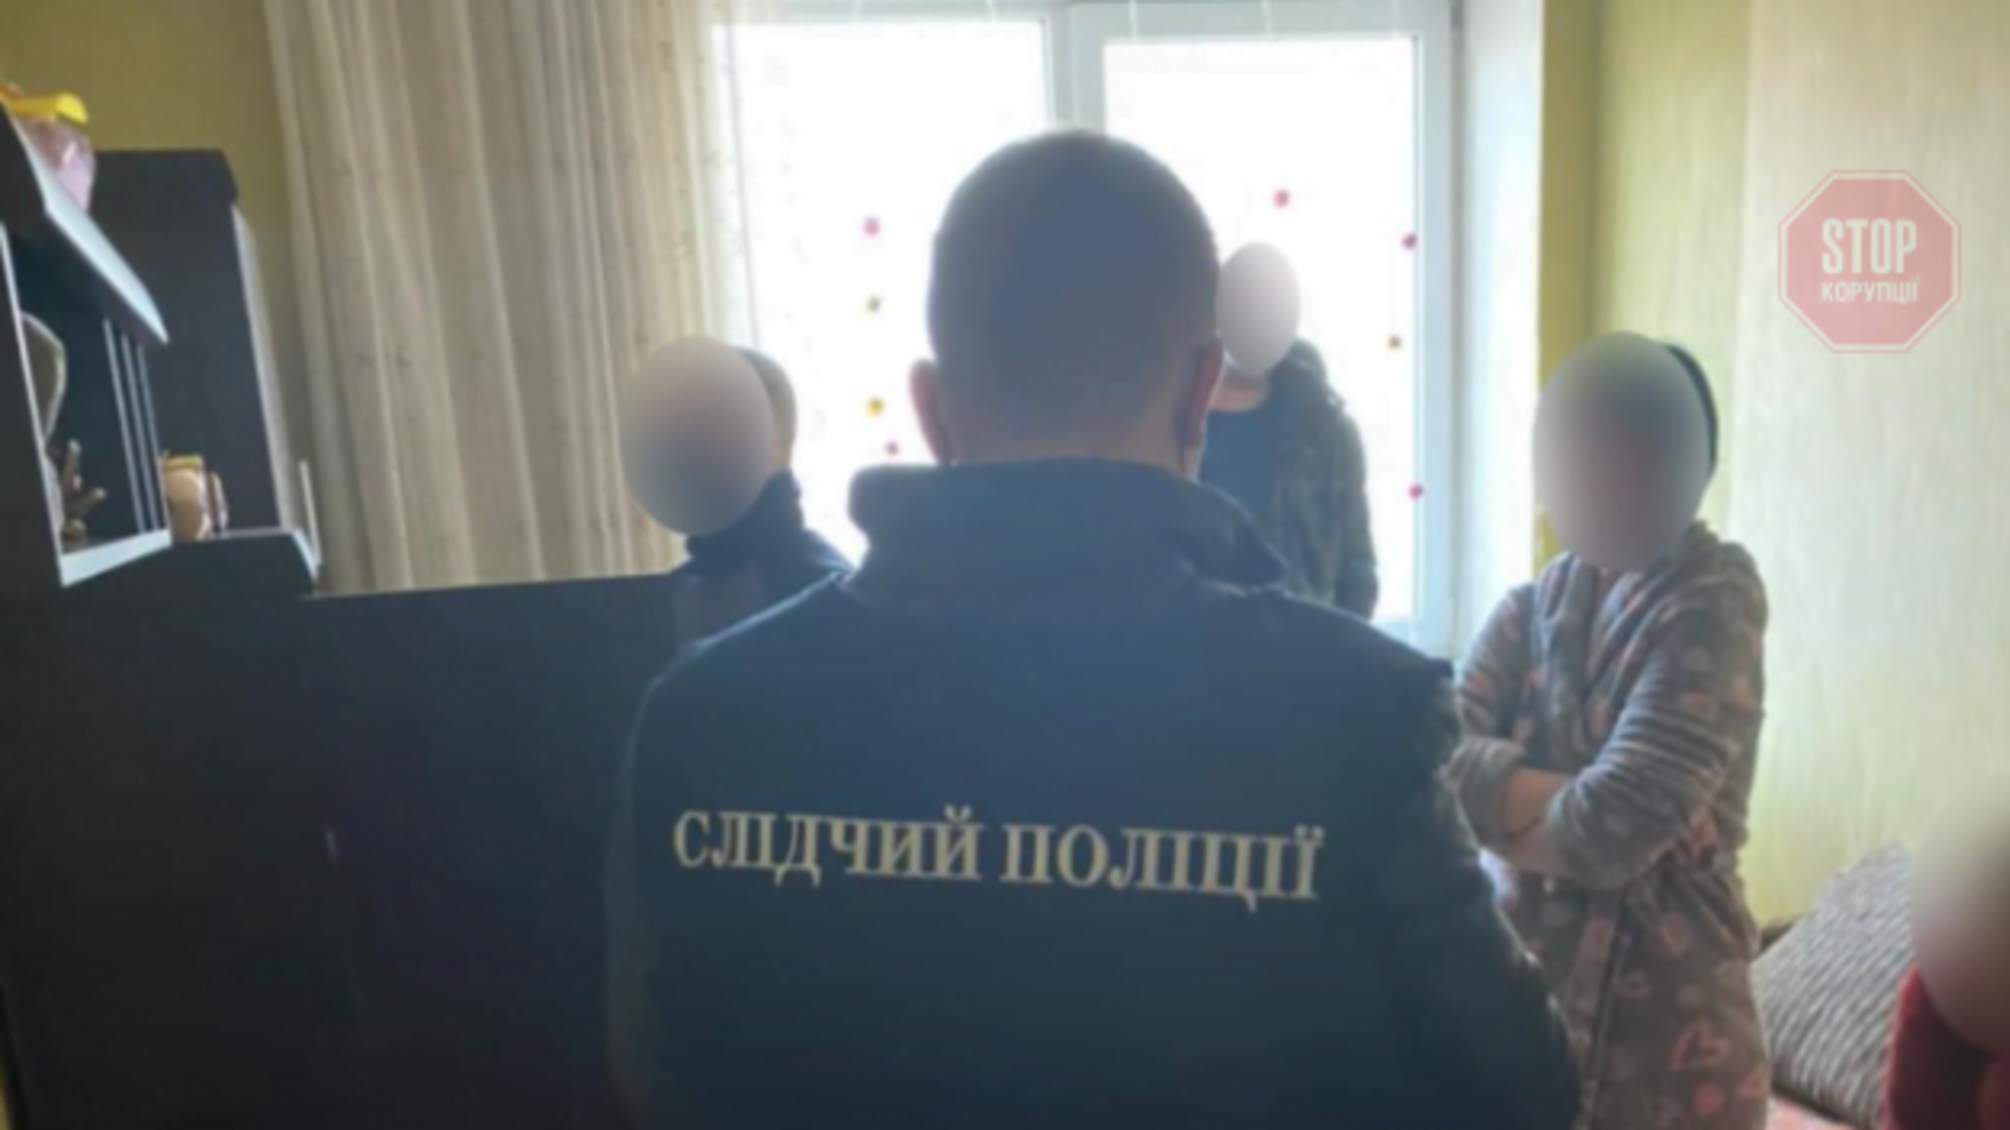 Новини Харкова: правоохоронці затримали сутенерів, що були членами громадської організації (фото)